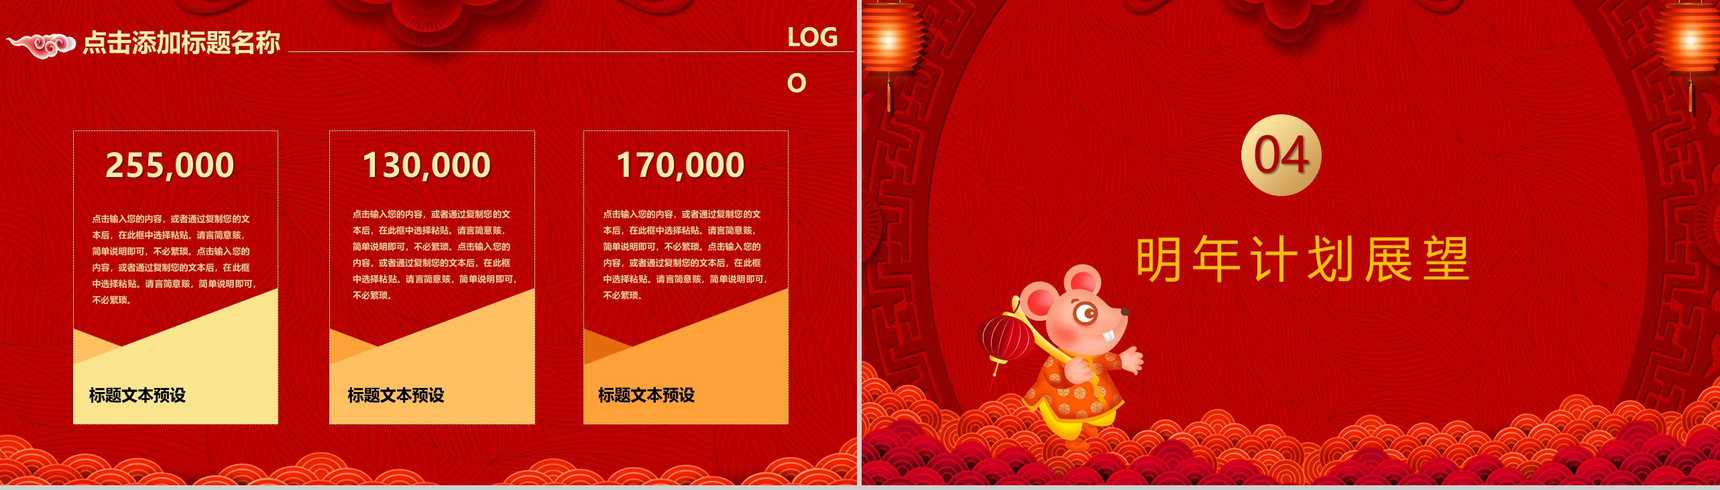 中国风恭贺新春鼠年大吉年终总结汇报PPT模板-10